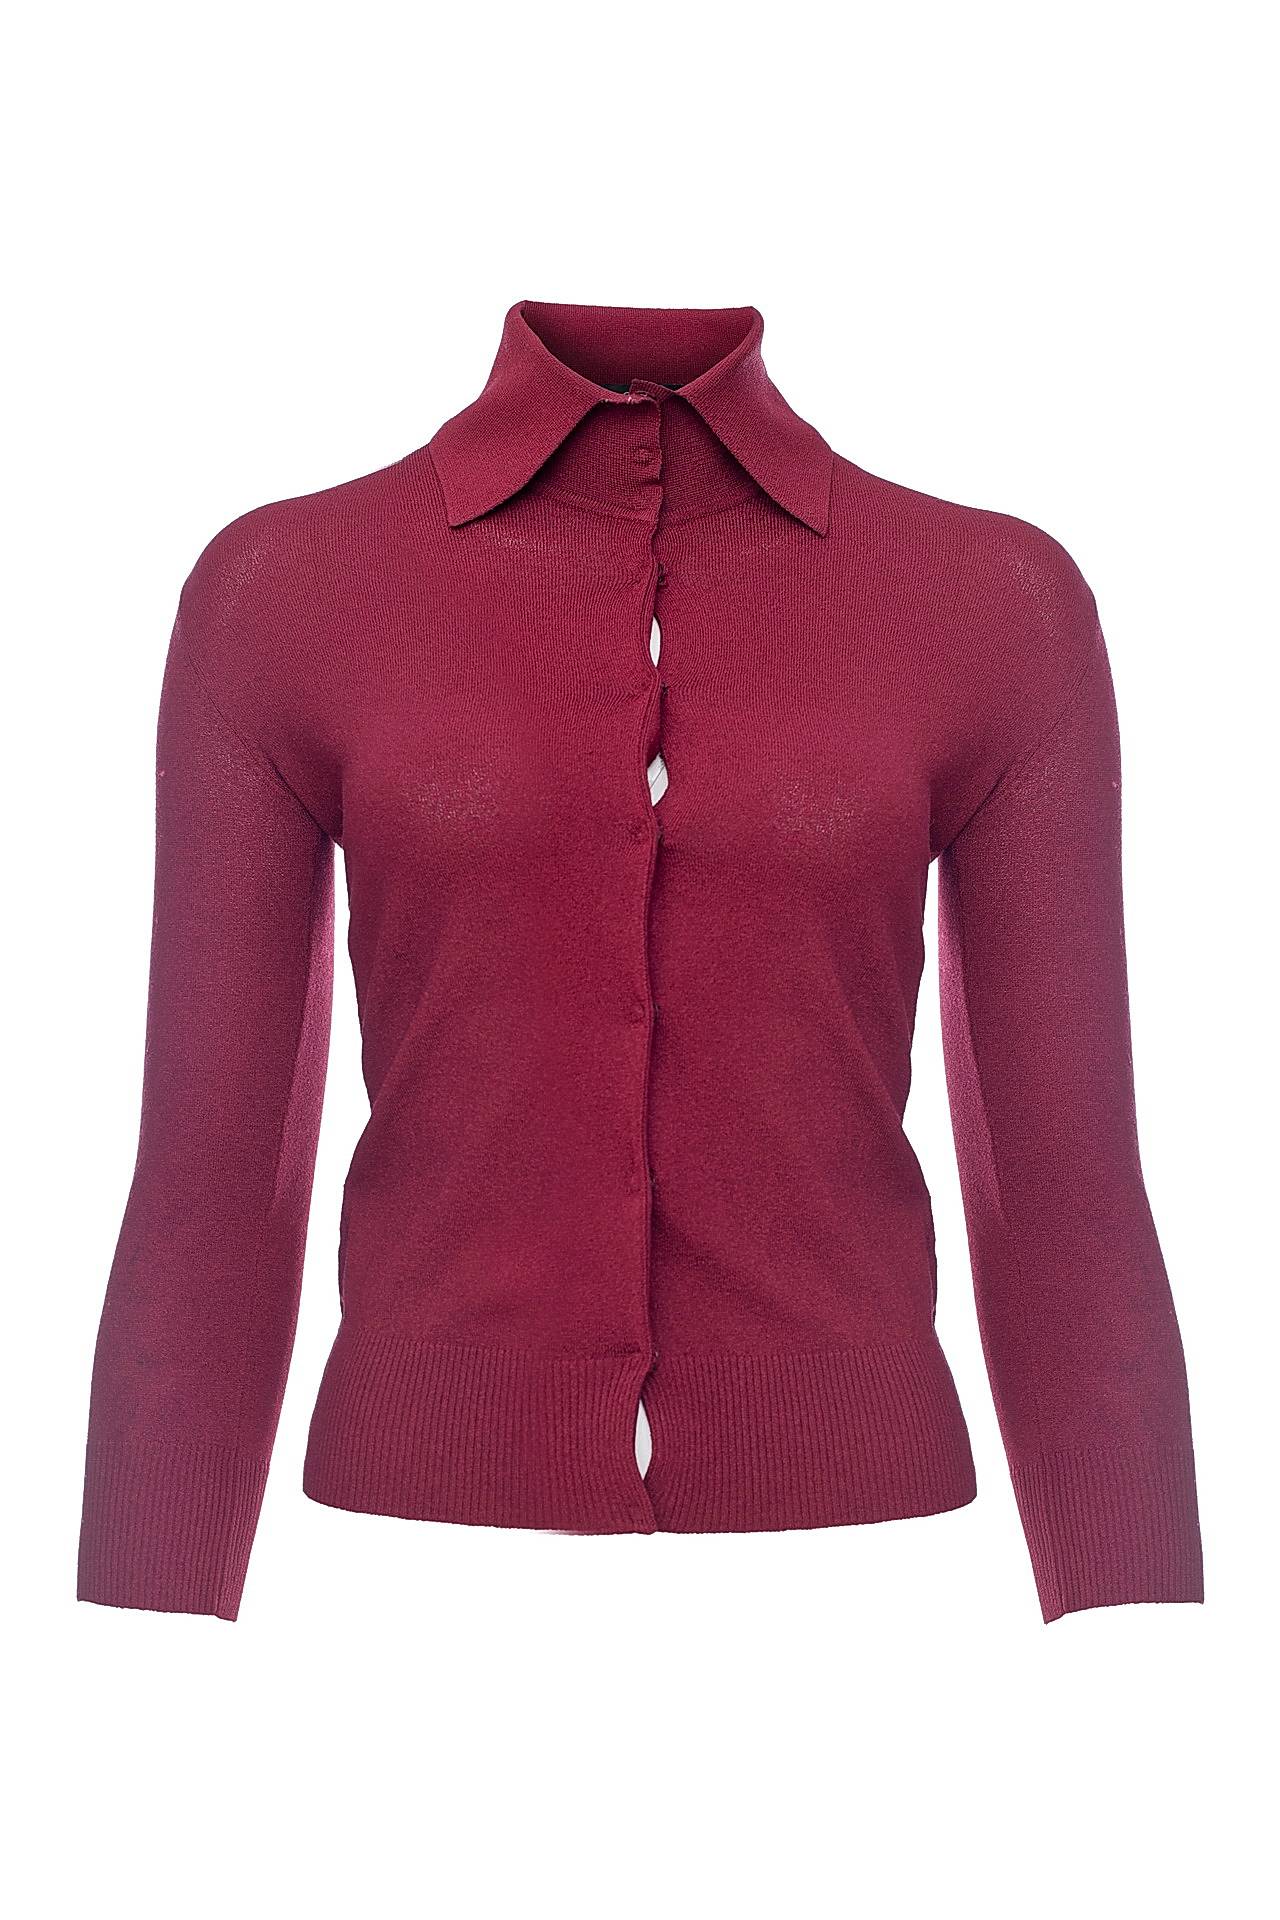 Одежда женская Кофта DOLCE & GABBANA (PA93783/0010). Купить за 8970 руб.